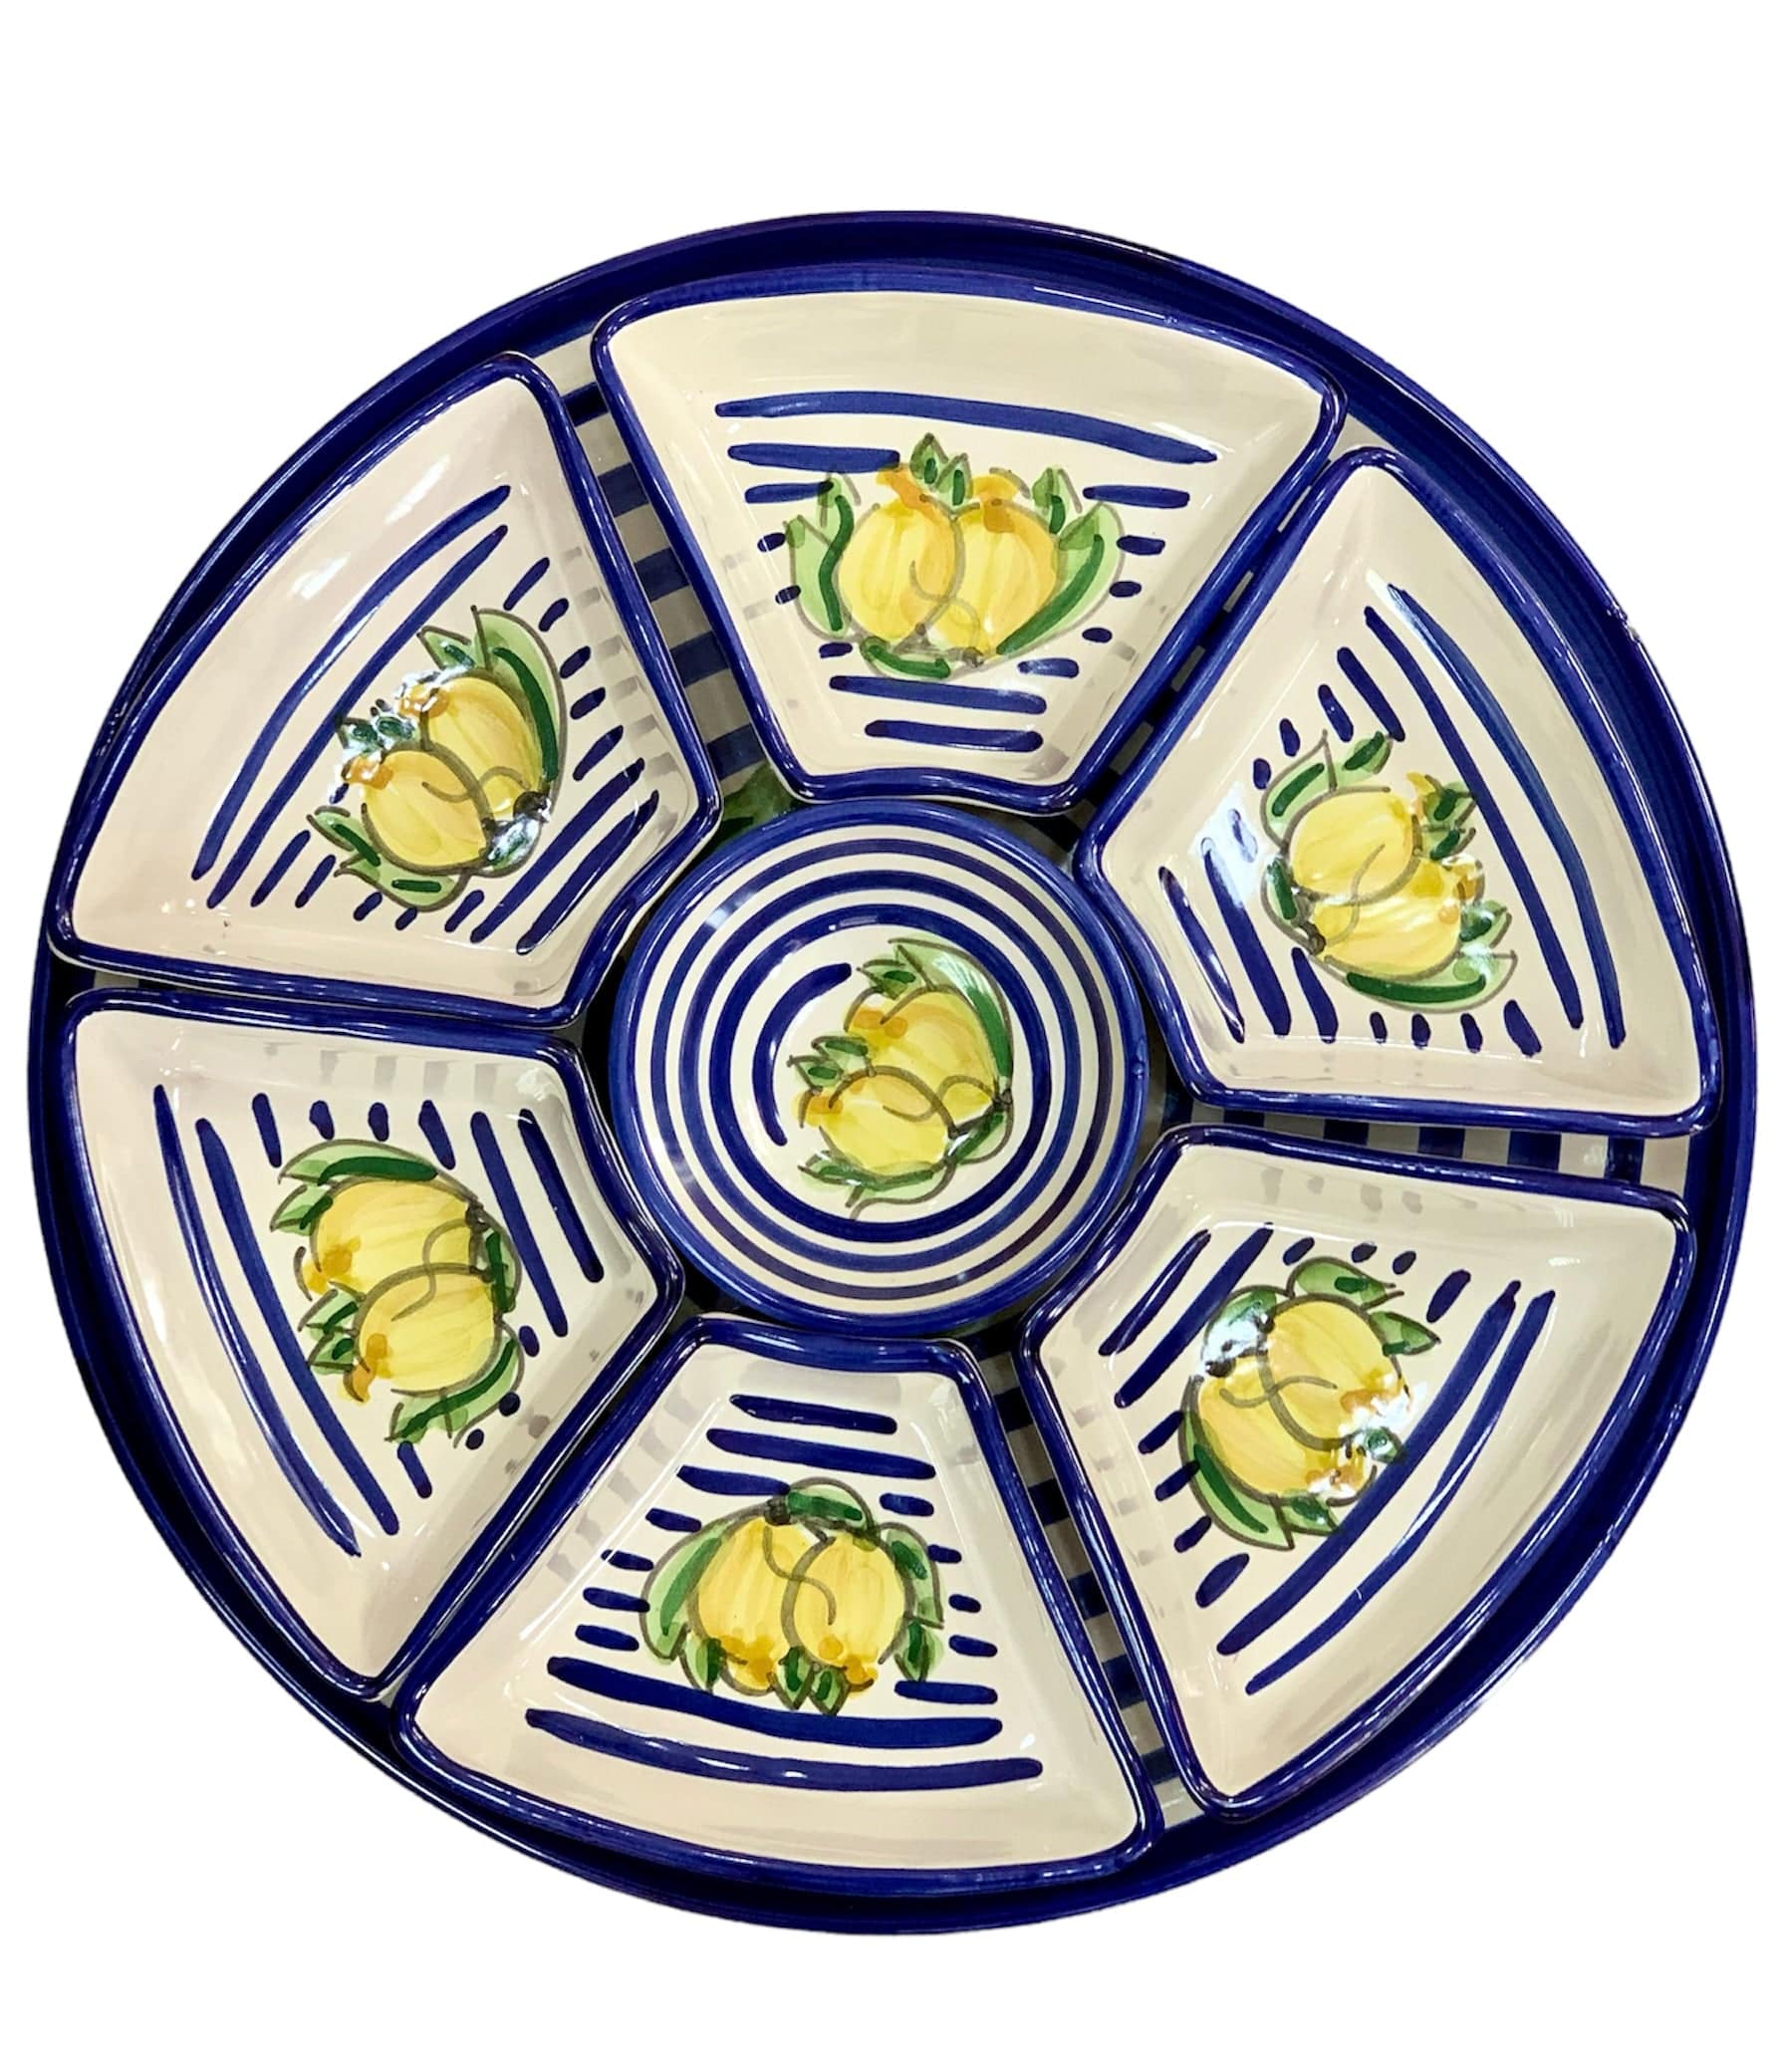 Antipastiera piatto per aperitivo AMALFI in Ceramica Vietrese 38 cm 8 pezzi DIPINTA A MANO - Dolci pensieri gift